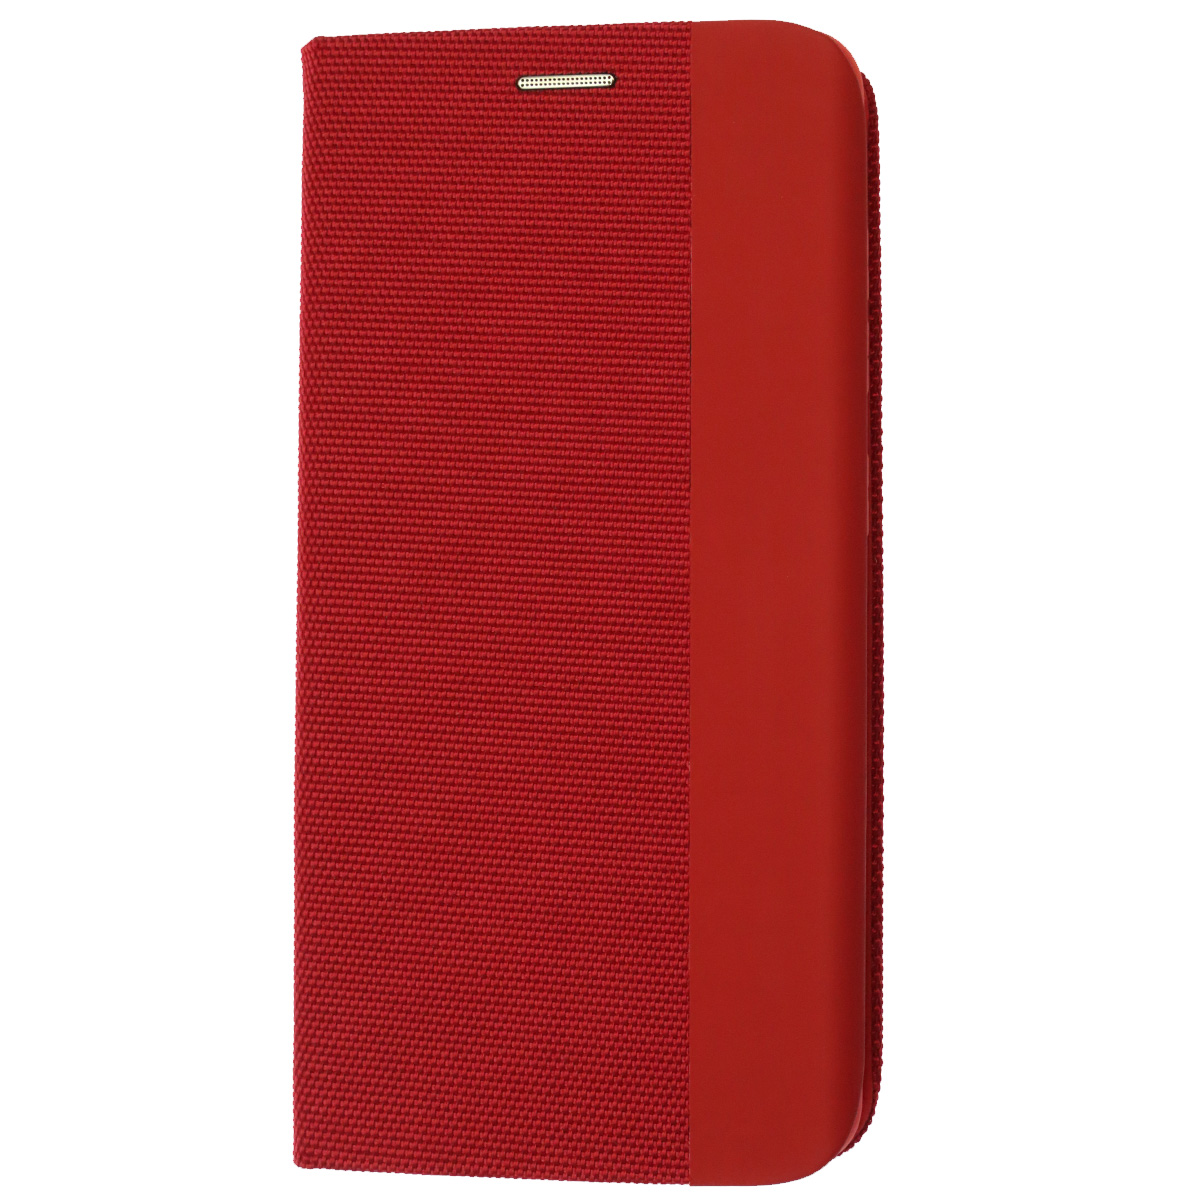 Чехол книжка MESH для SAMSUNG Galaxy A51 (SM-A515F), текстиль, силикон, бархат, визитница, цвет красный